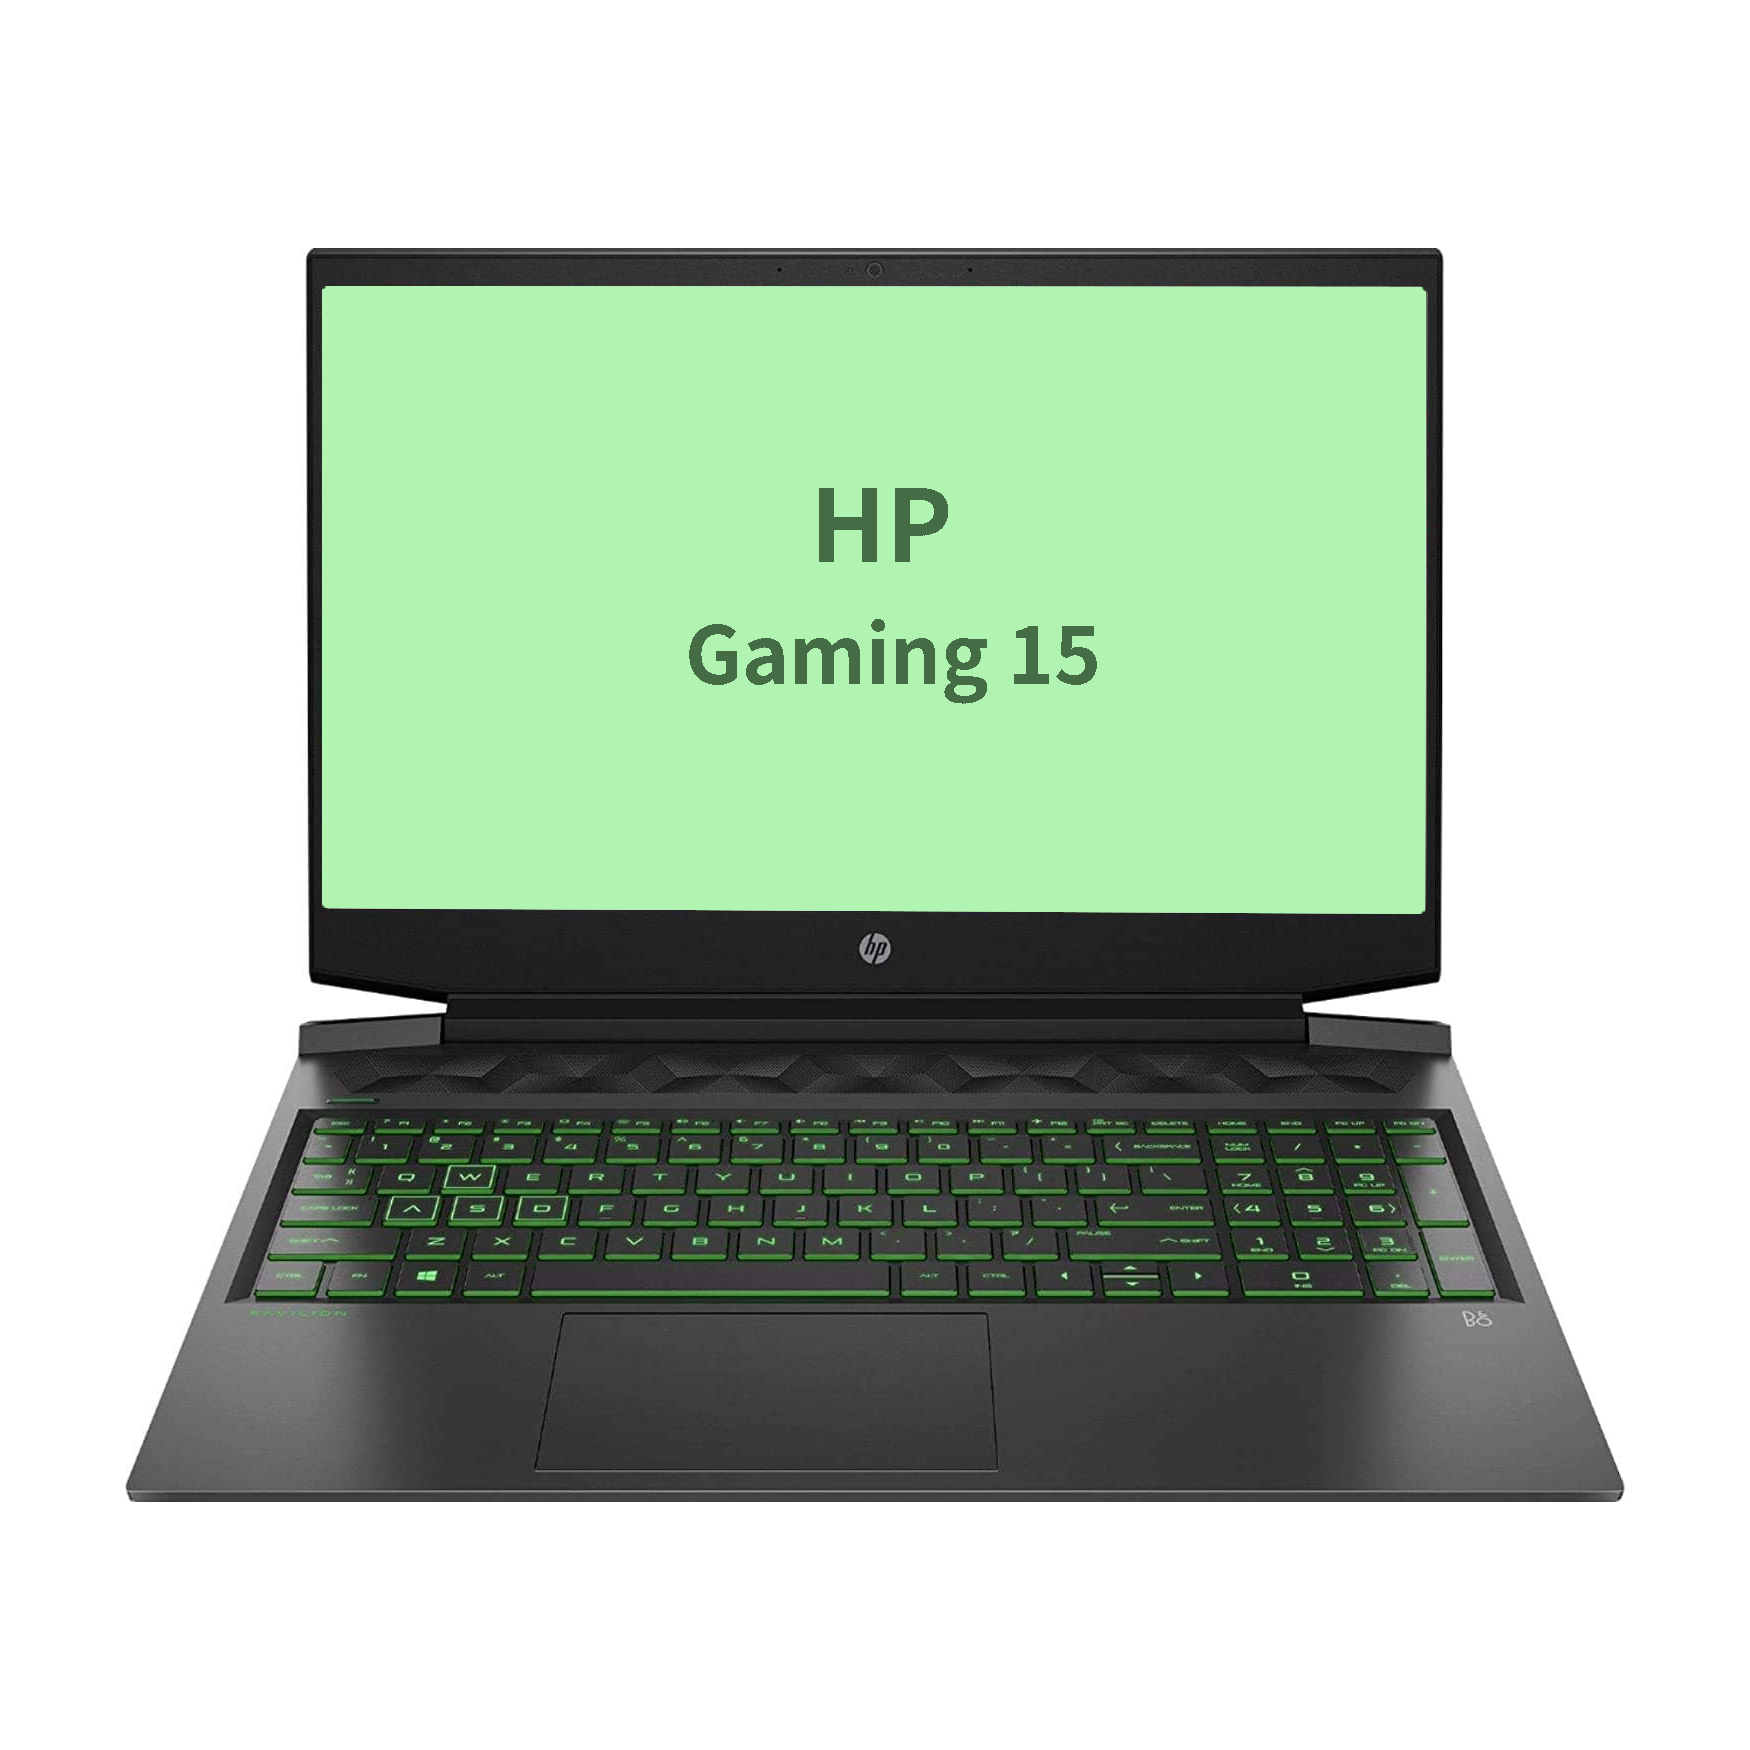 HP Gaming 15